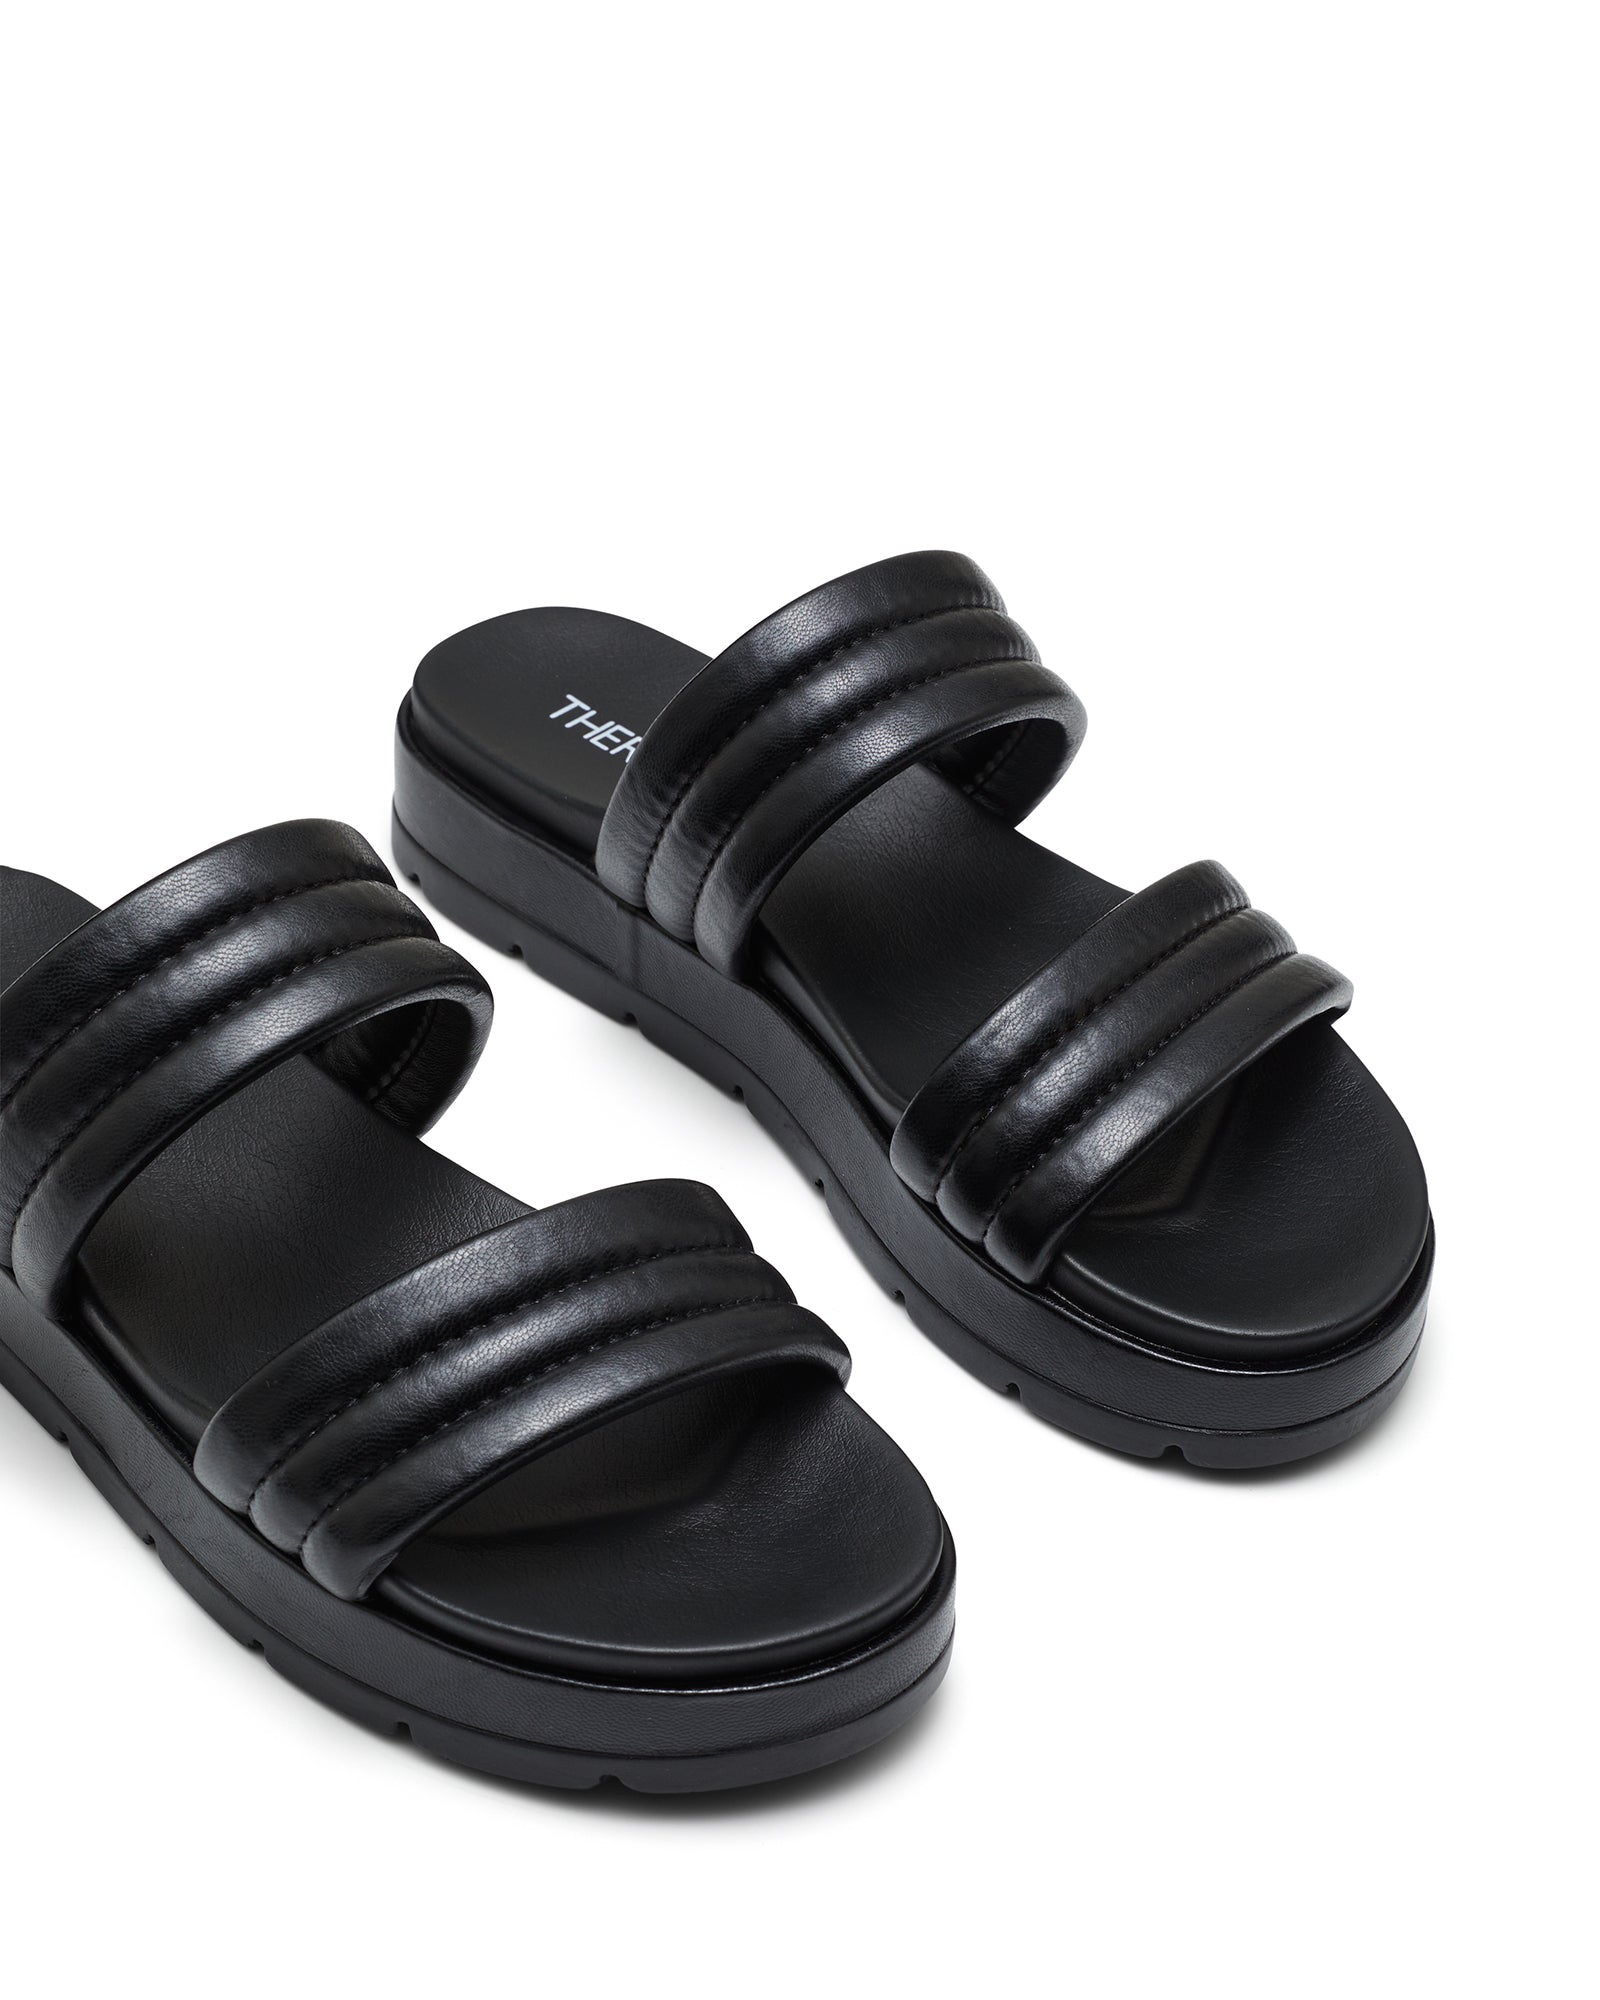 Therapy Shoes Slander Black | Women's Sandals | Slides | Platform | Flatform